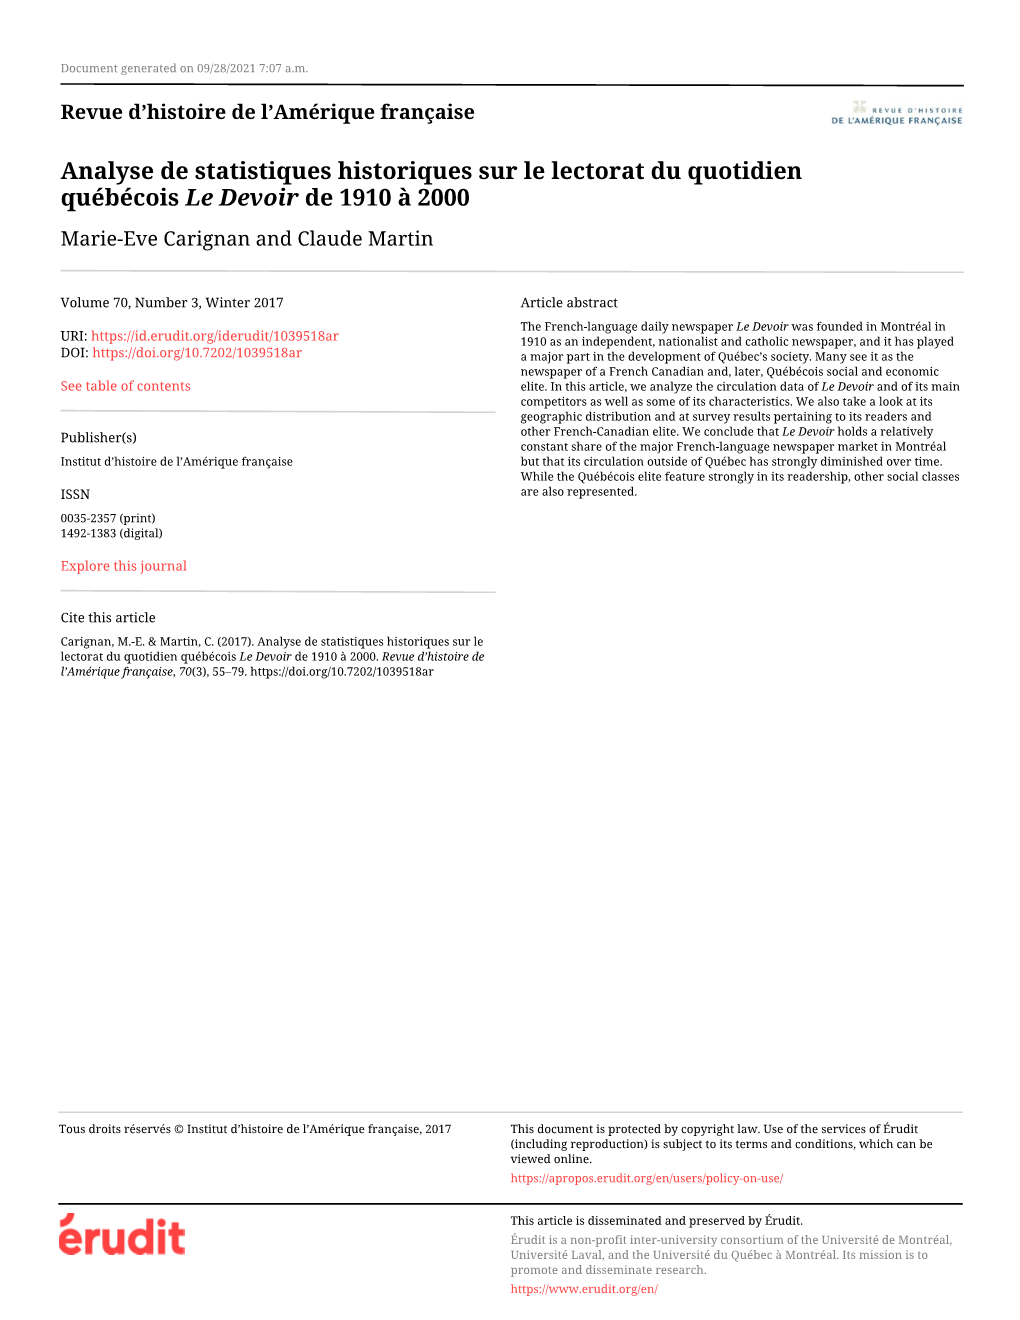 Analyse De Statistiques Historiques Sur Le Lectorat Du Quotidien Québécois Le Devoir De 1910 À 2000 Marie-Eve Carignan and Claude Martin